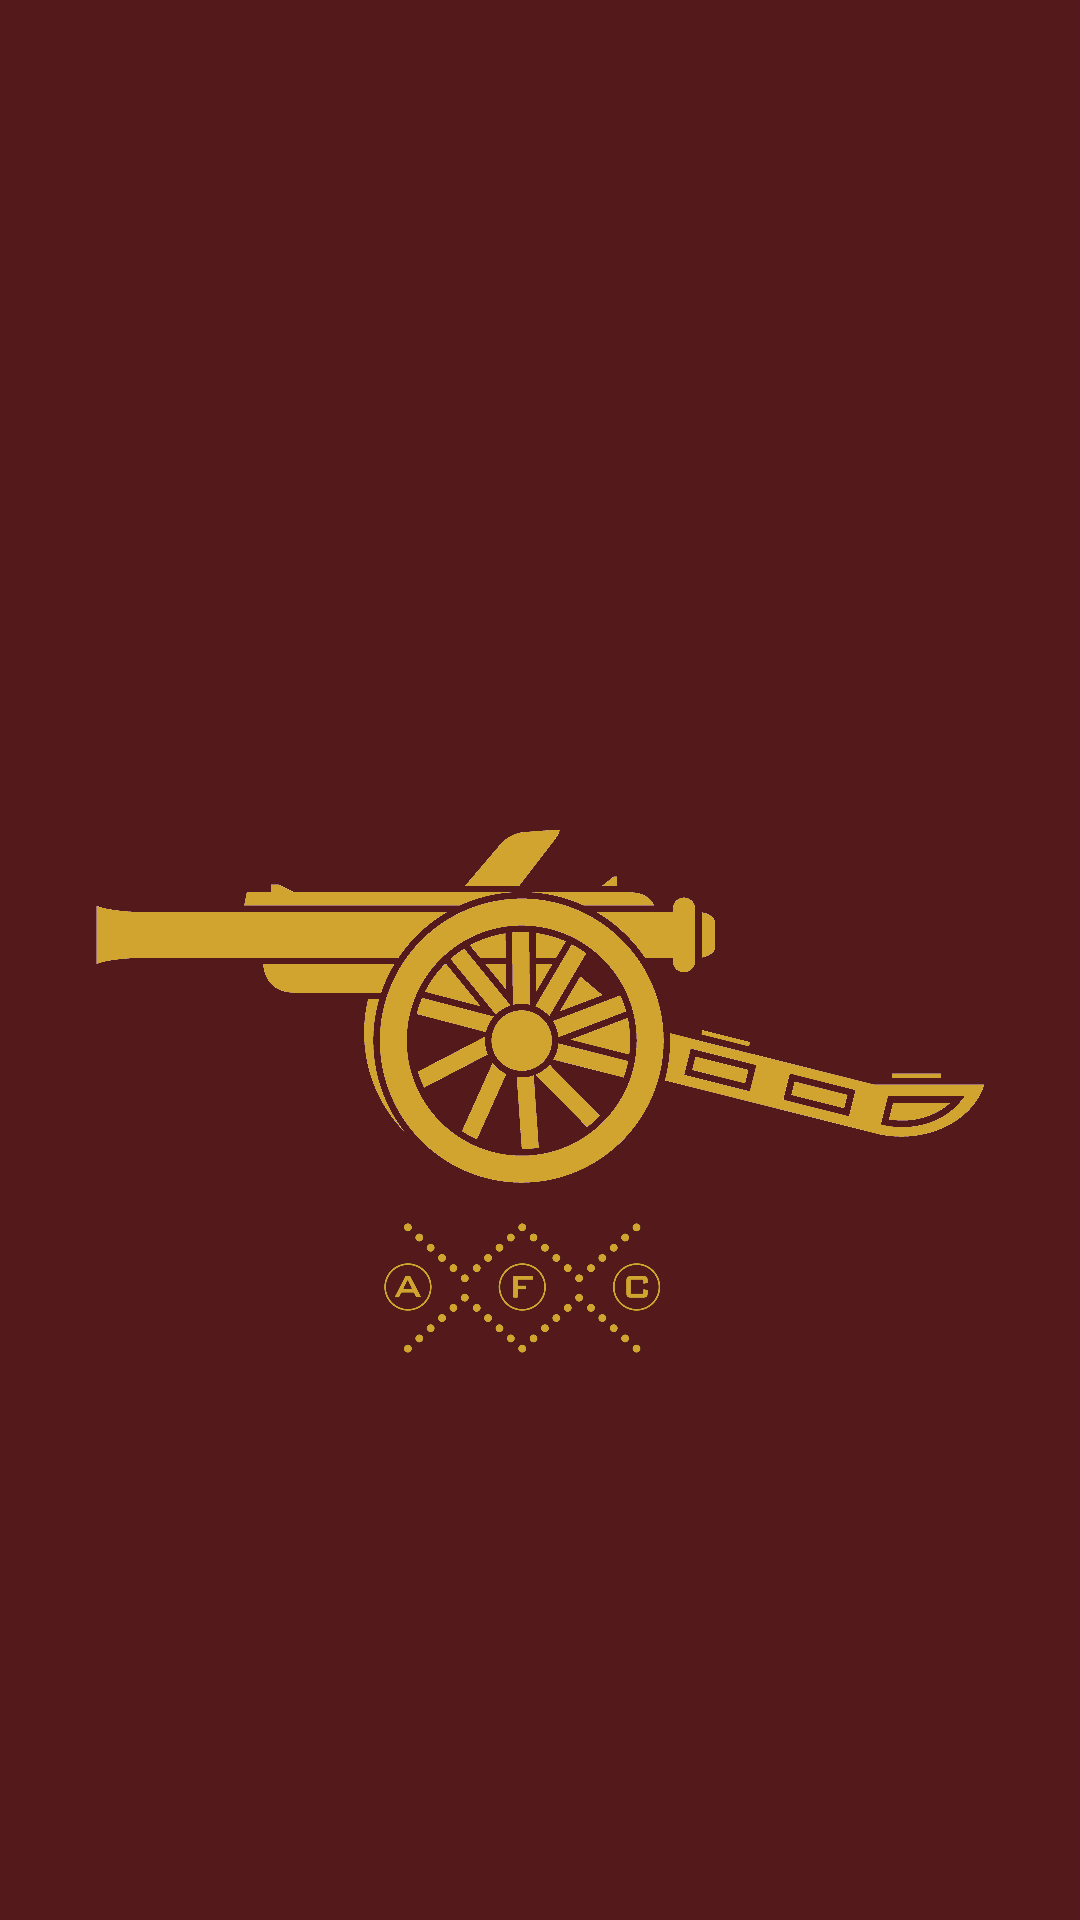 Arsenal logo hd wallpaper for mobile